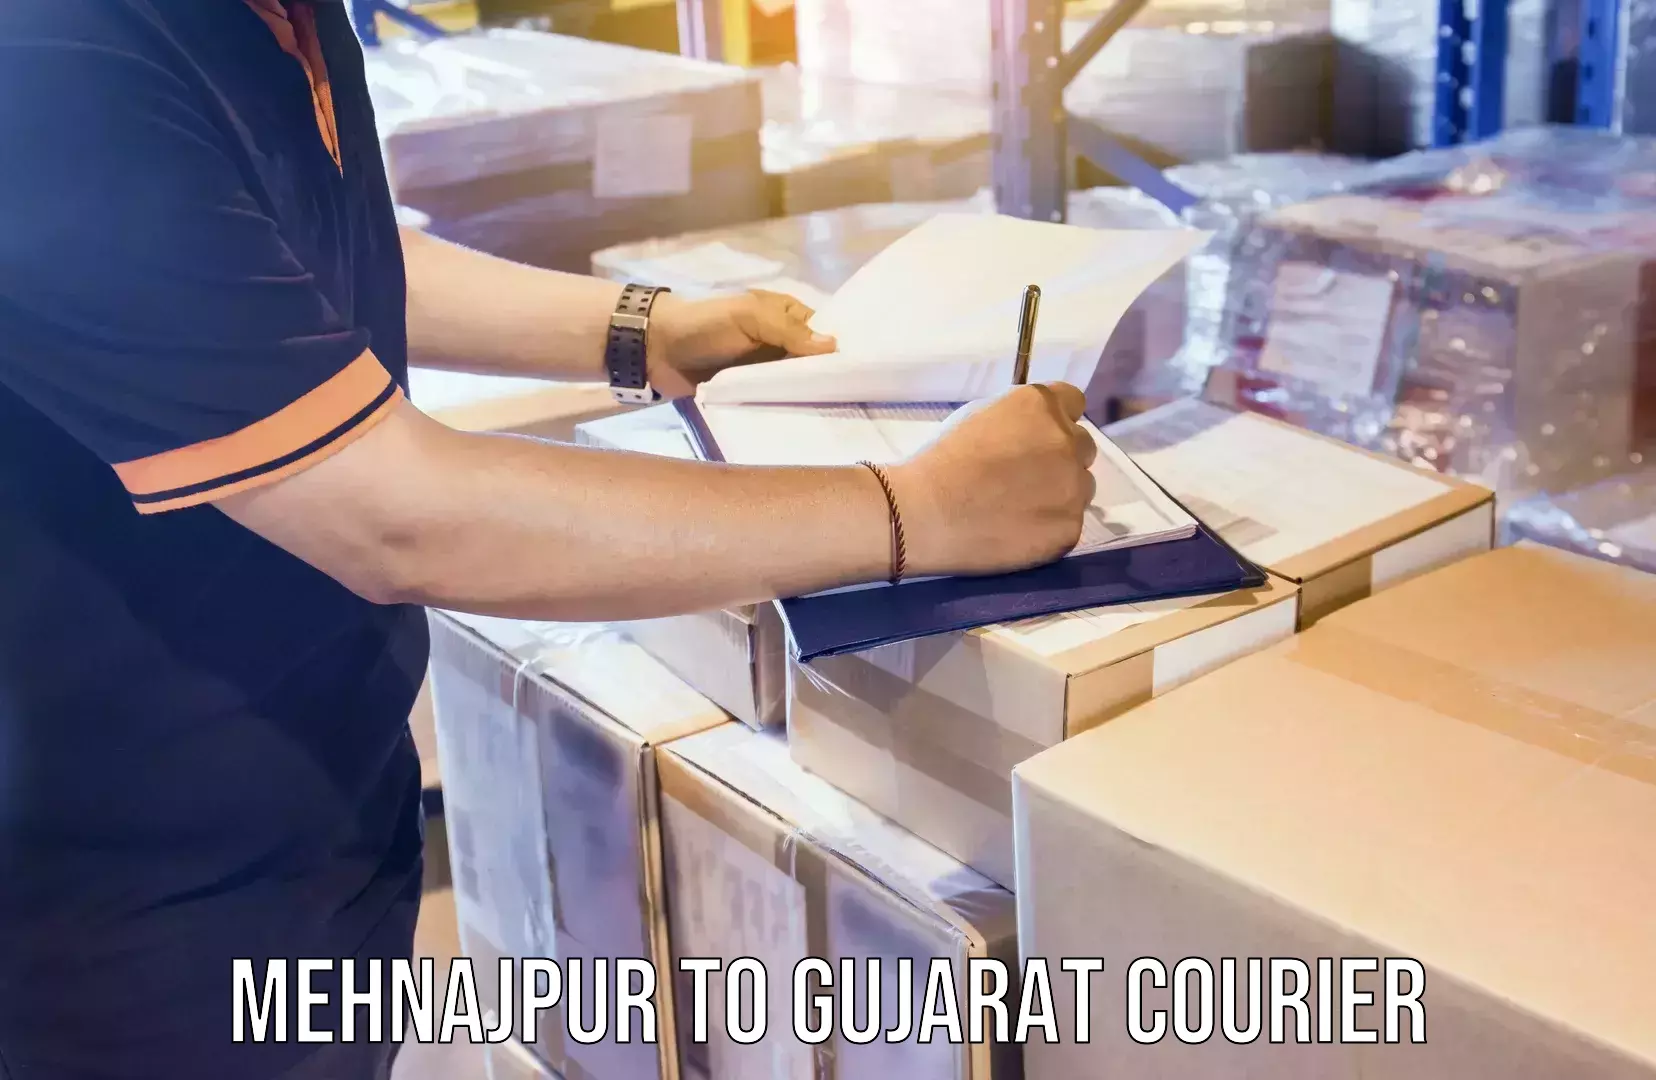 Expert goods movers Mehnajpur to Gujarat